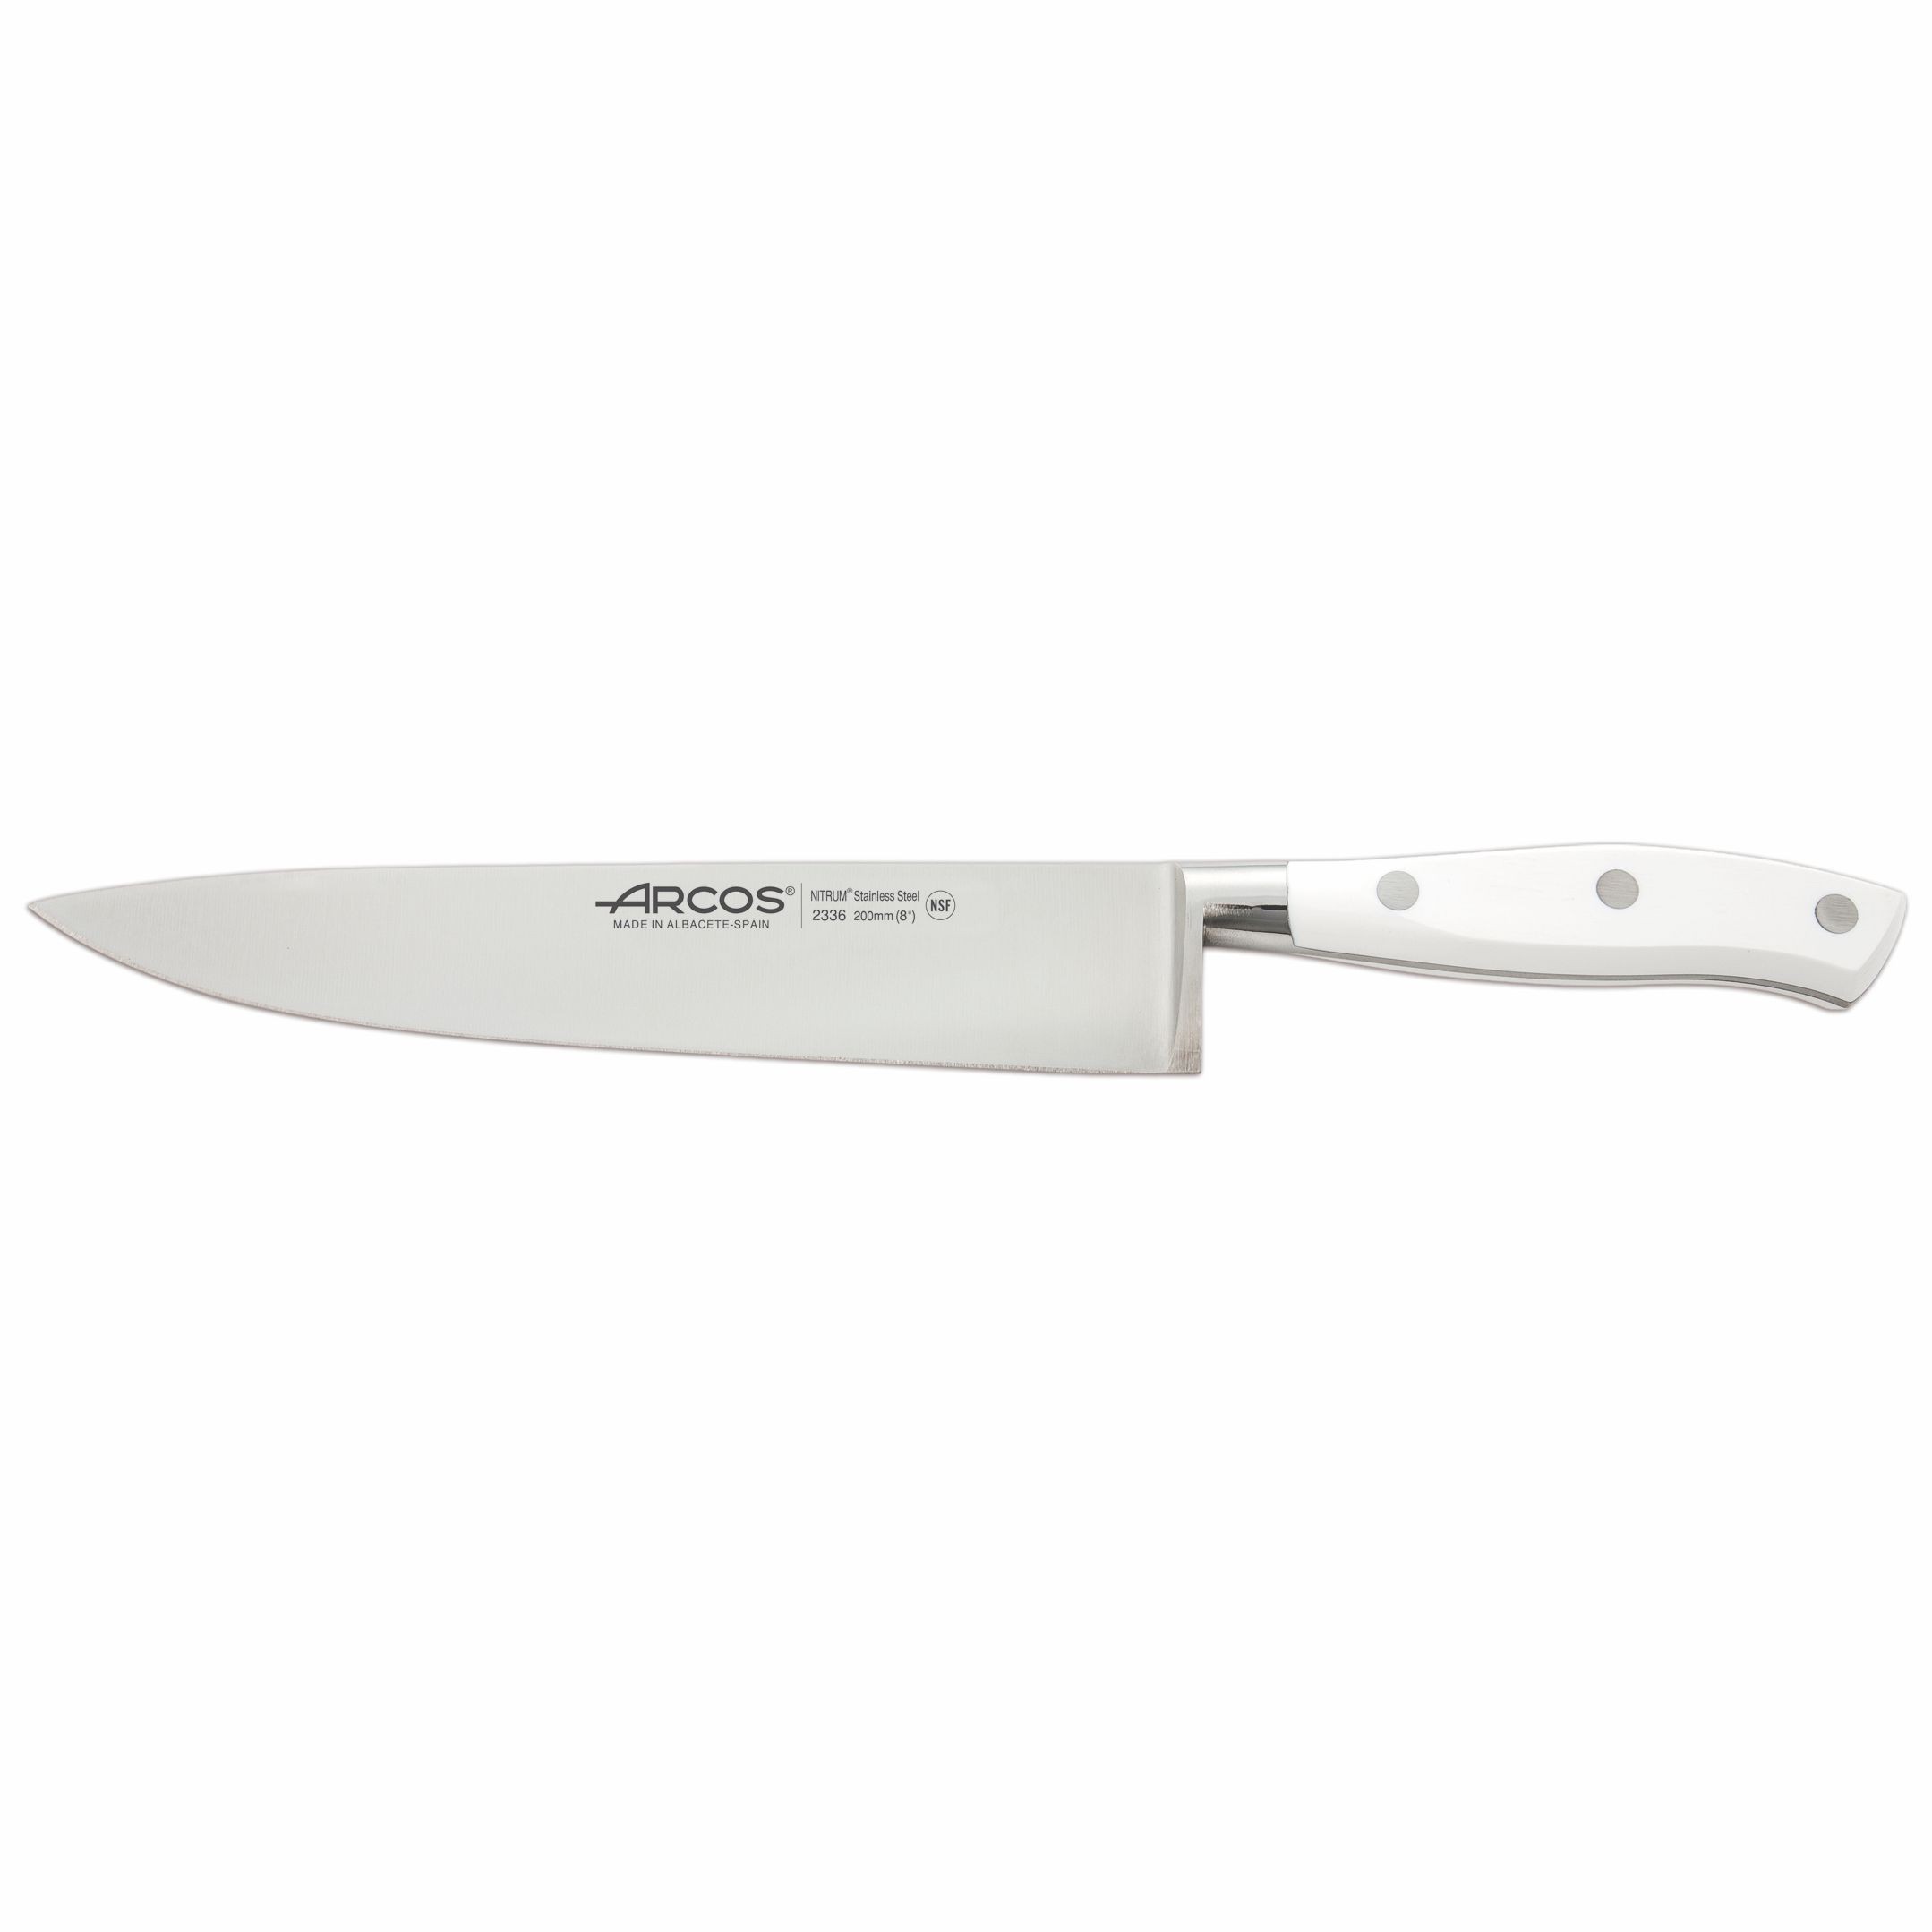 https://www.cuchilleriadelprofesional.com/2314/arcos-riviera-blanc-chef-knife-20-cm-8.jpg